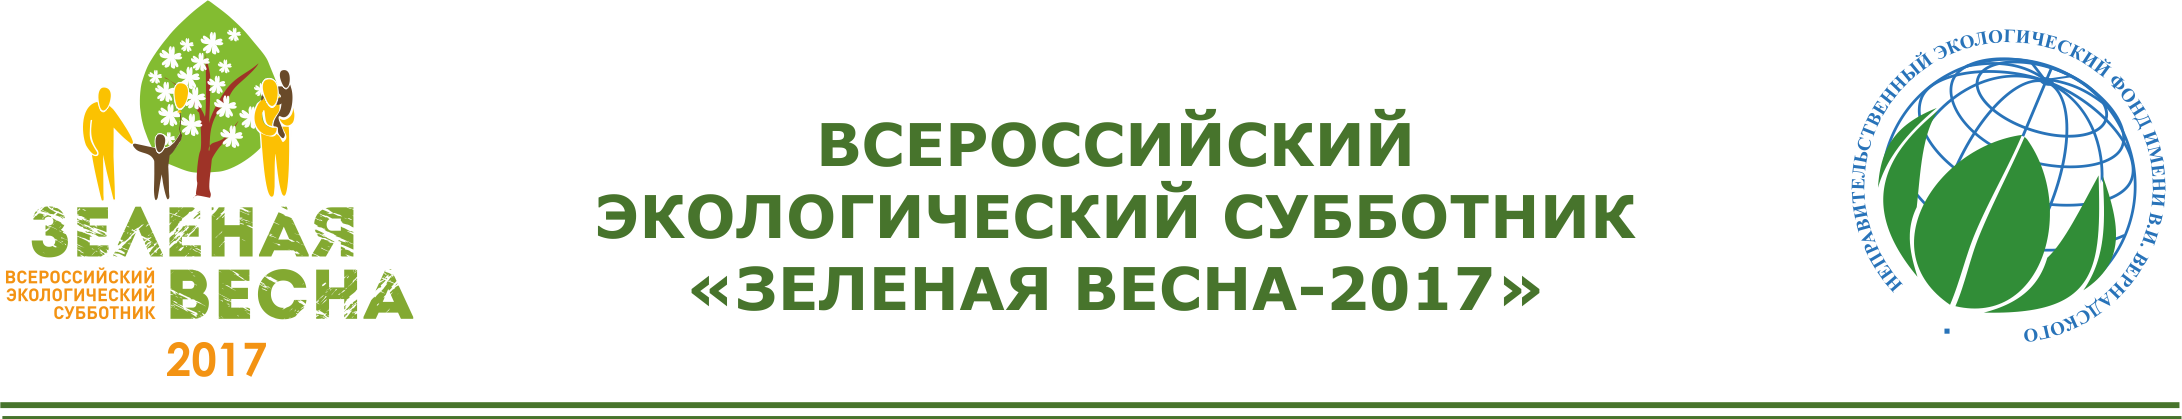 Неправительственный экологический фонд имени В.И. Вернадского организует проведение Всероссийского экологического субботника «Зеленая Весна»